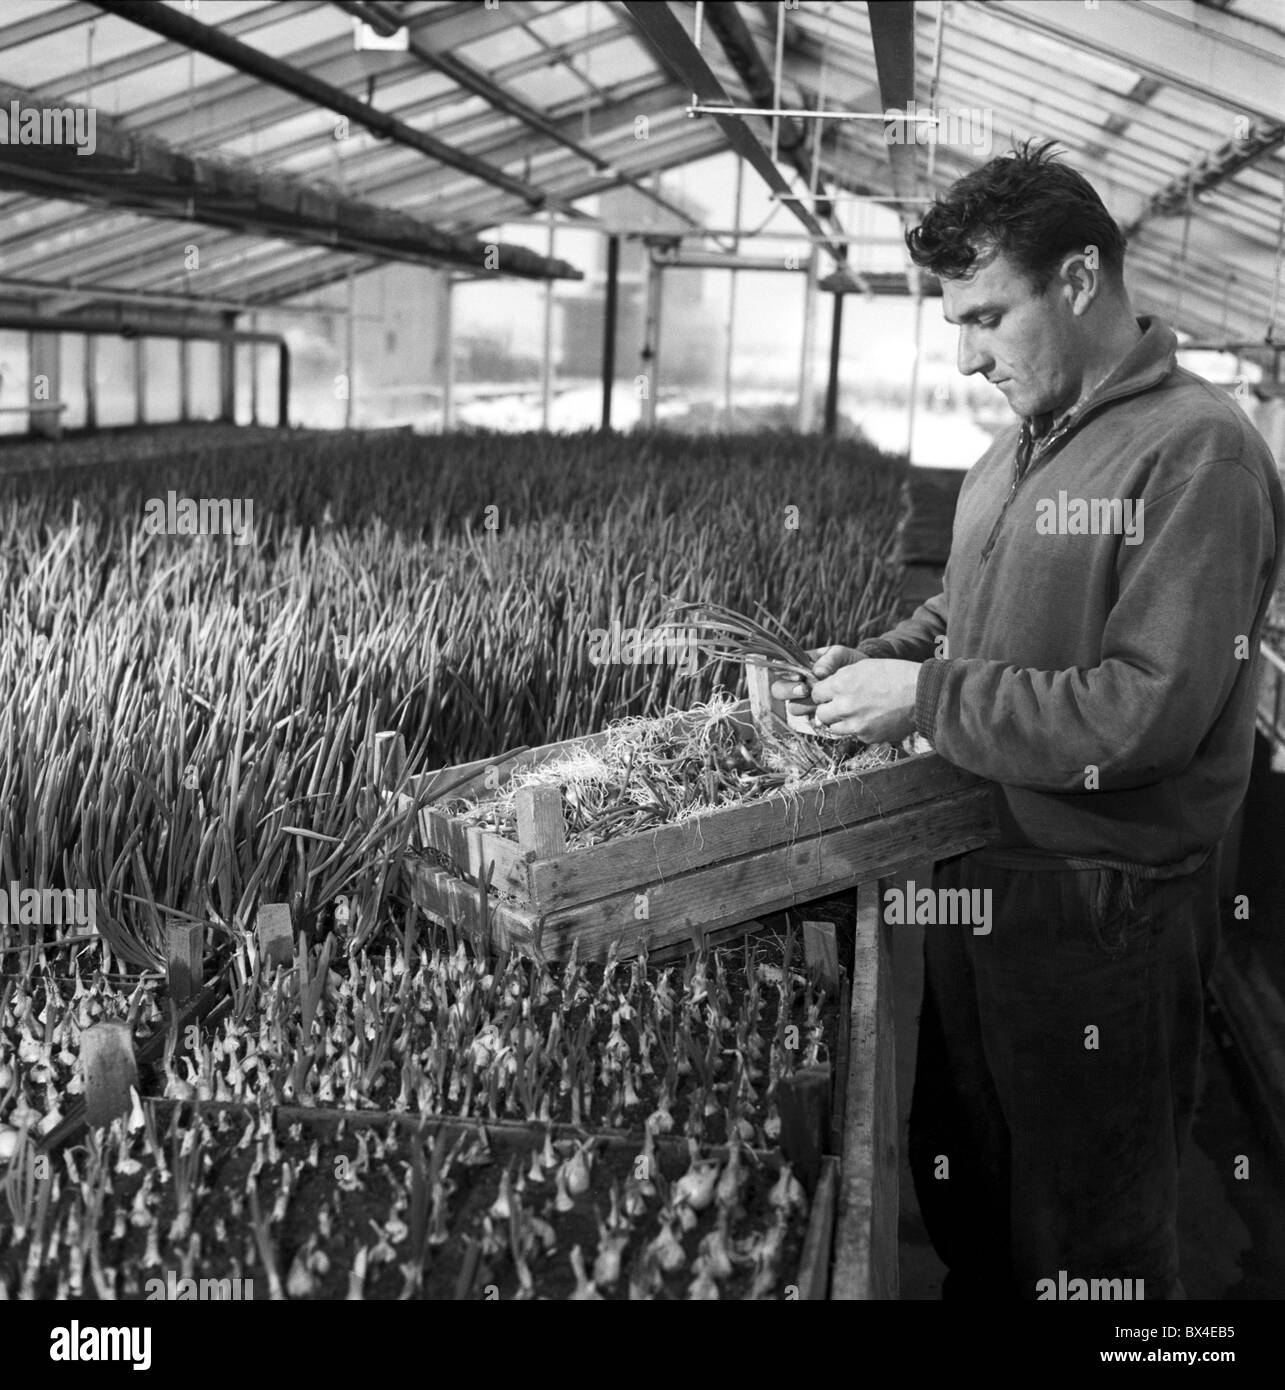 Vereinigte landwirtschaftliche Genossenschaft Arbeiter (Rahmen) erntet Zwiebeln. Tschechoslowakei, Veliby 1963. (CTK Foto / Josef Nosek) Stockfoto